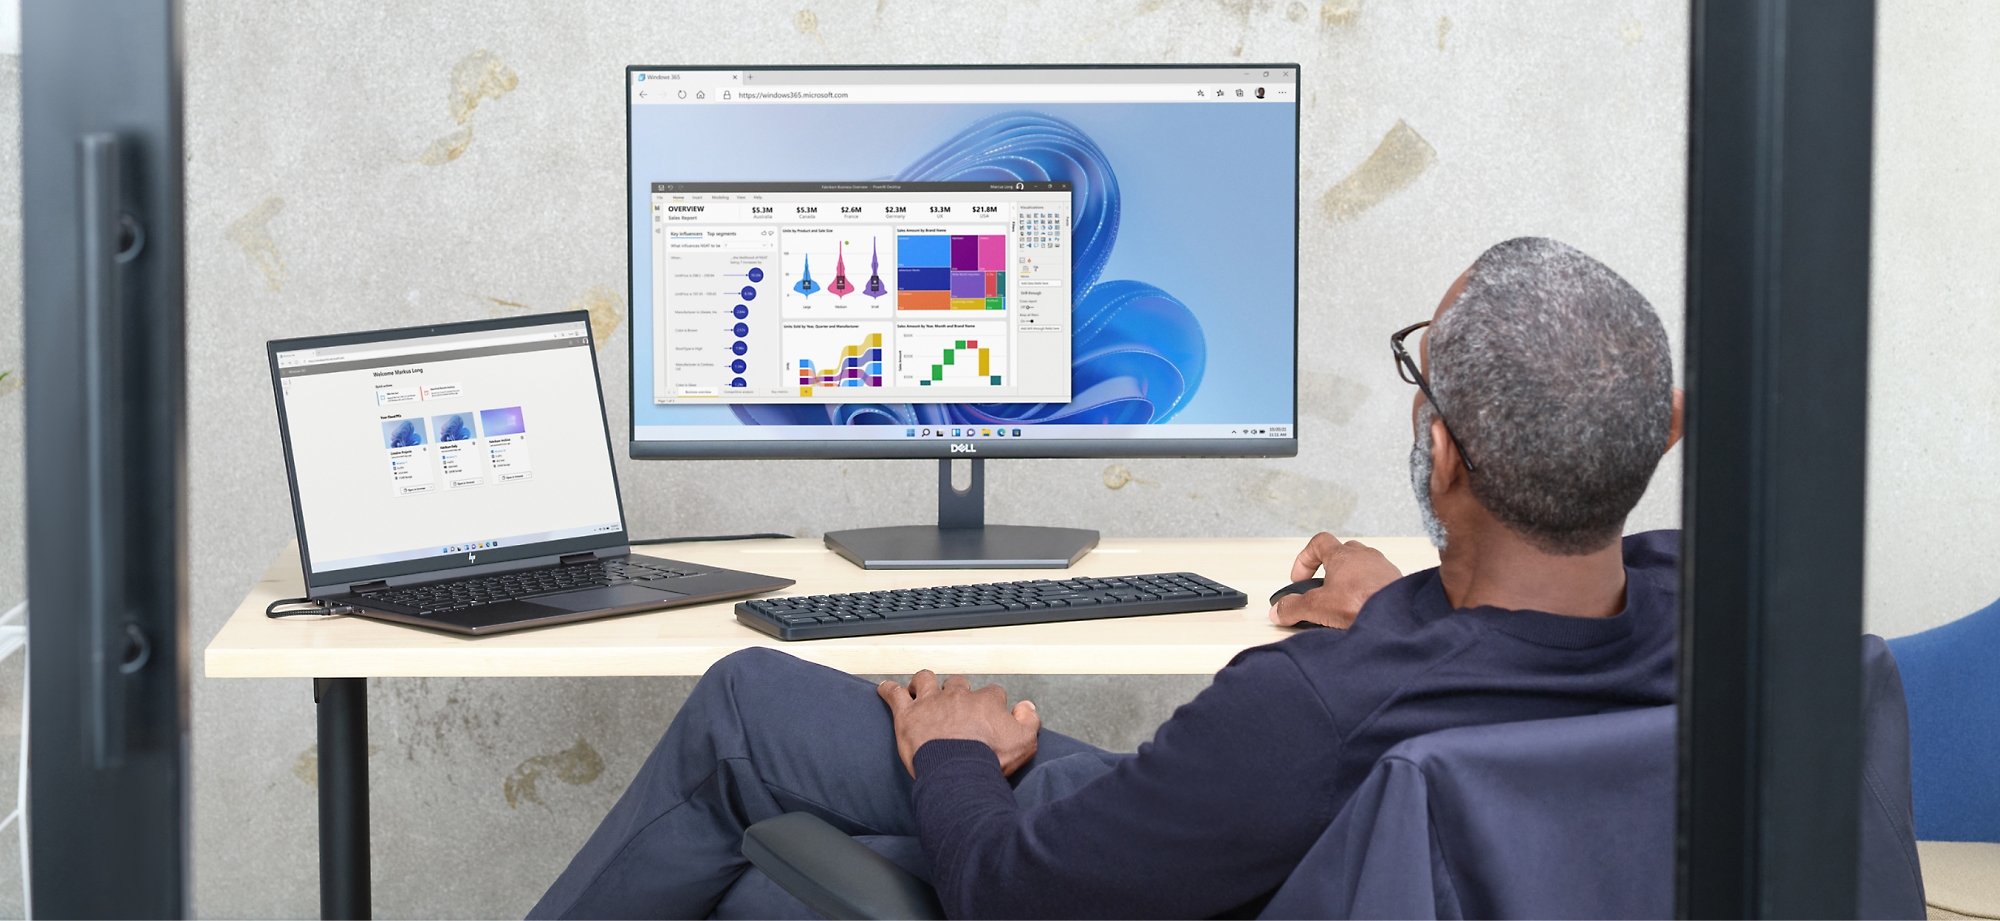 Un uomo esamina i grafici dati sullo schermo di un computer e un portatile in un ufficio.